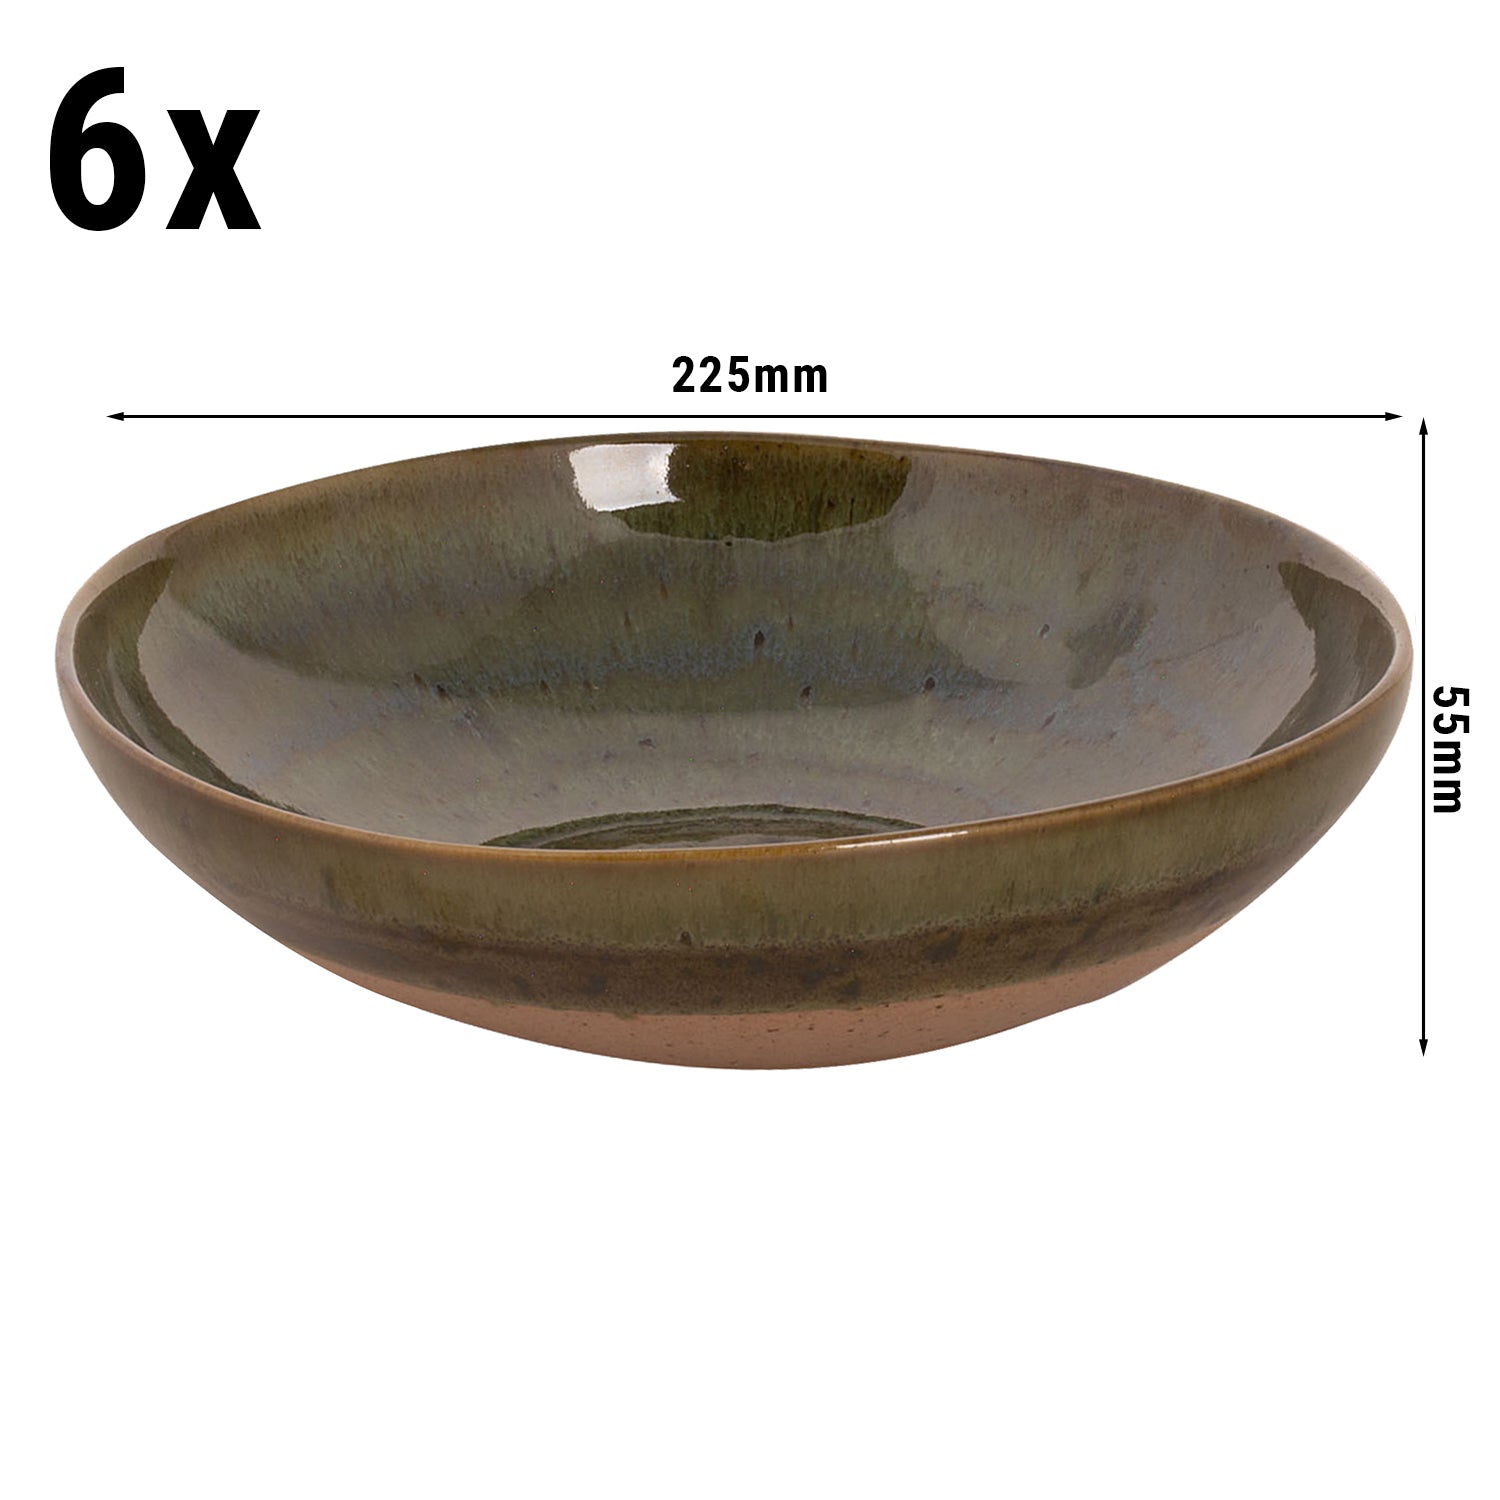 (6 stk.) WISTERIA - Dyb tallerken - Ø 22 cm - Grøn/Beige